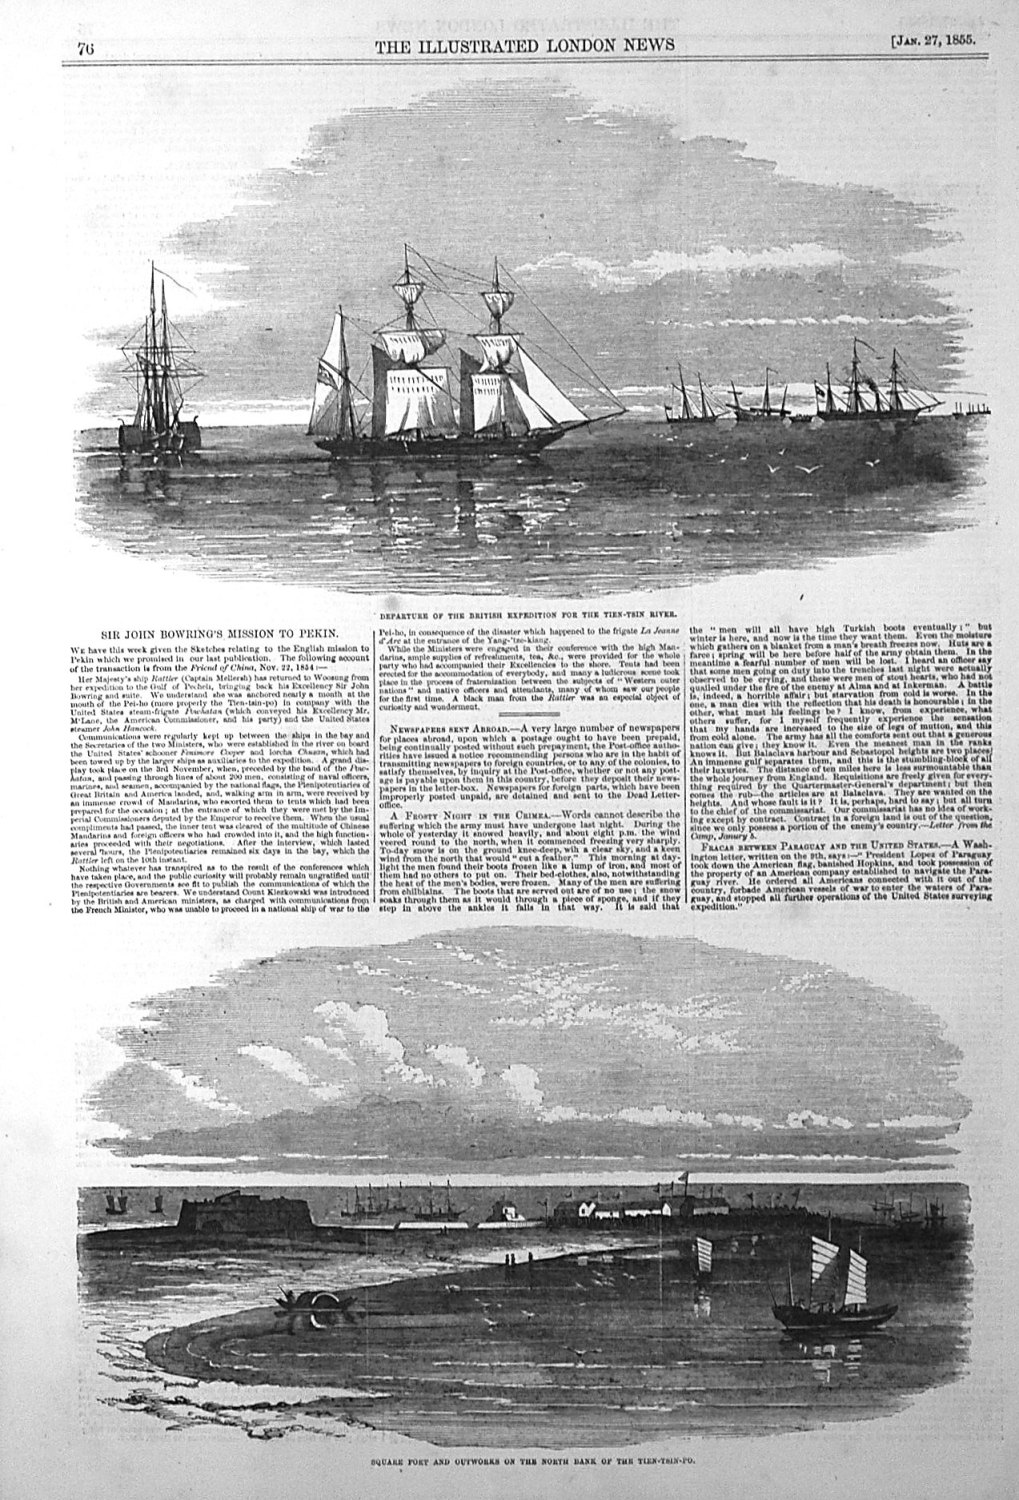 Sir John Bowring's Mission to Pekin. 1855